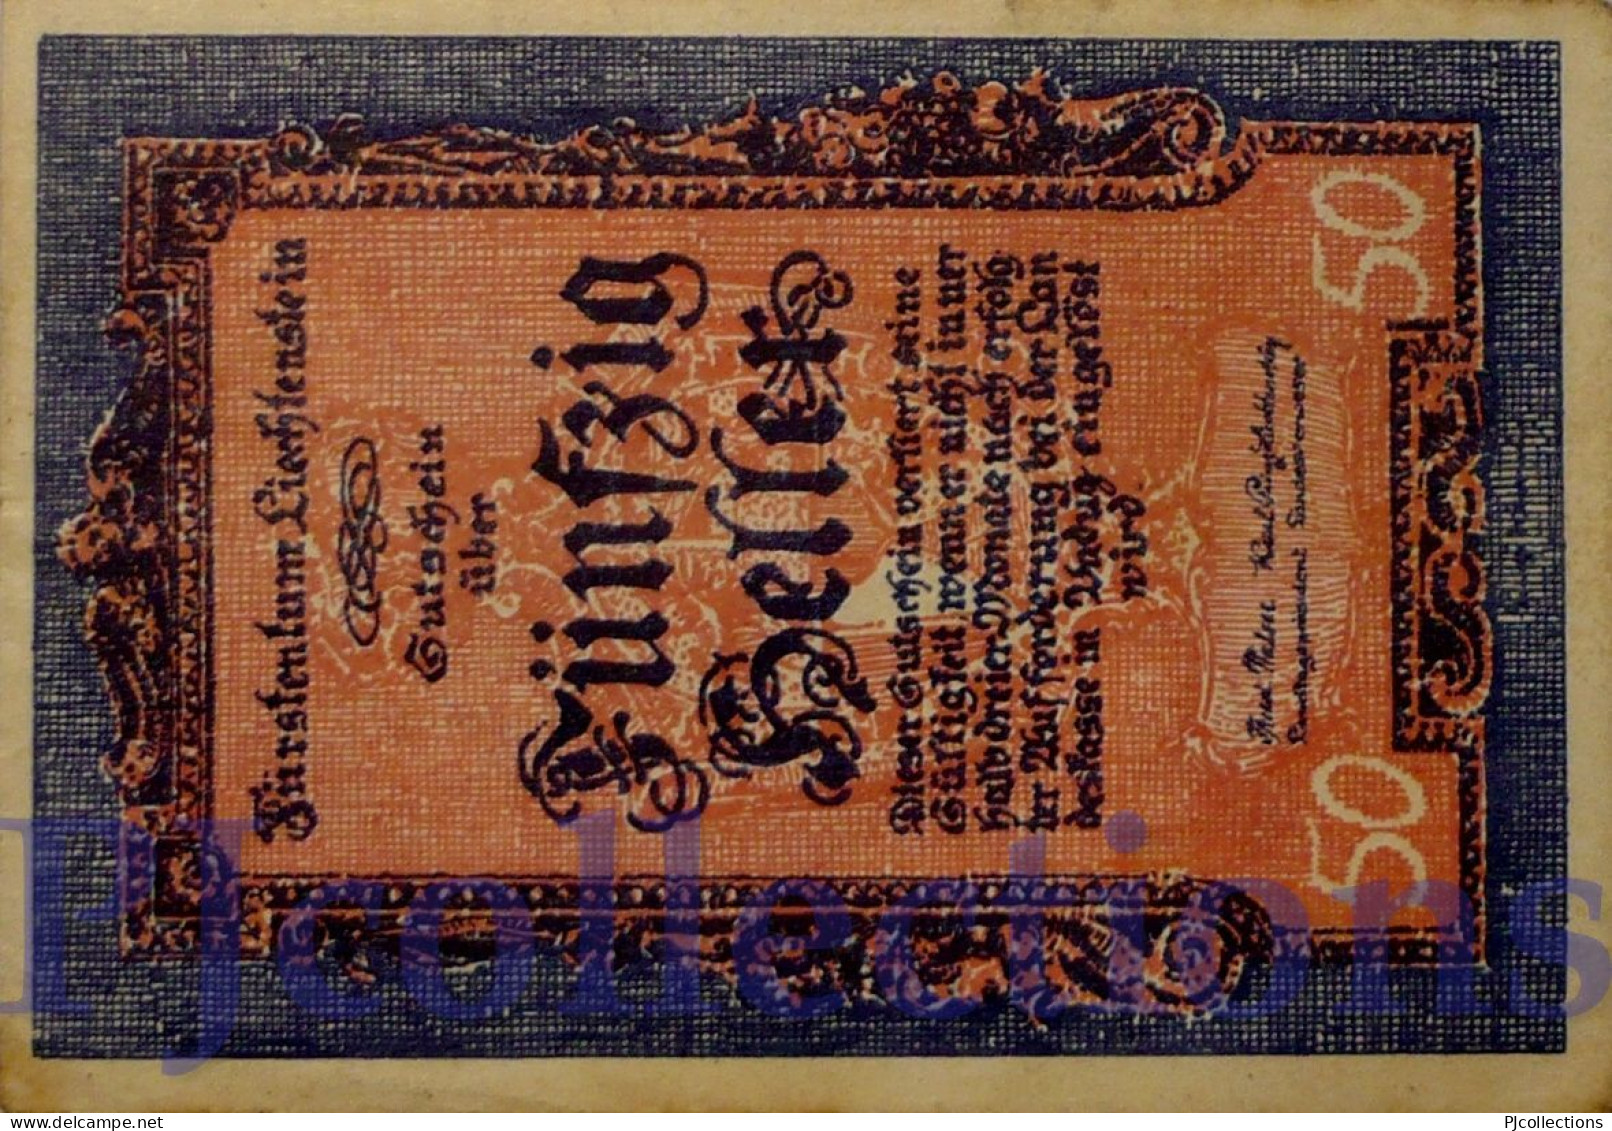 LIECHTENSTEIN 50 HELLER 1920 PICK 3 AUNC - Liechtenstein